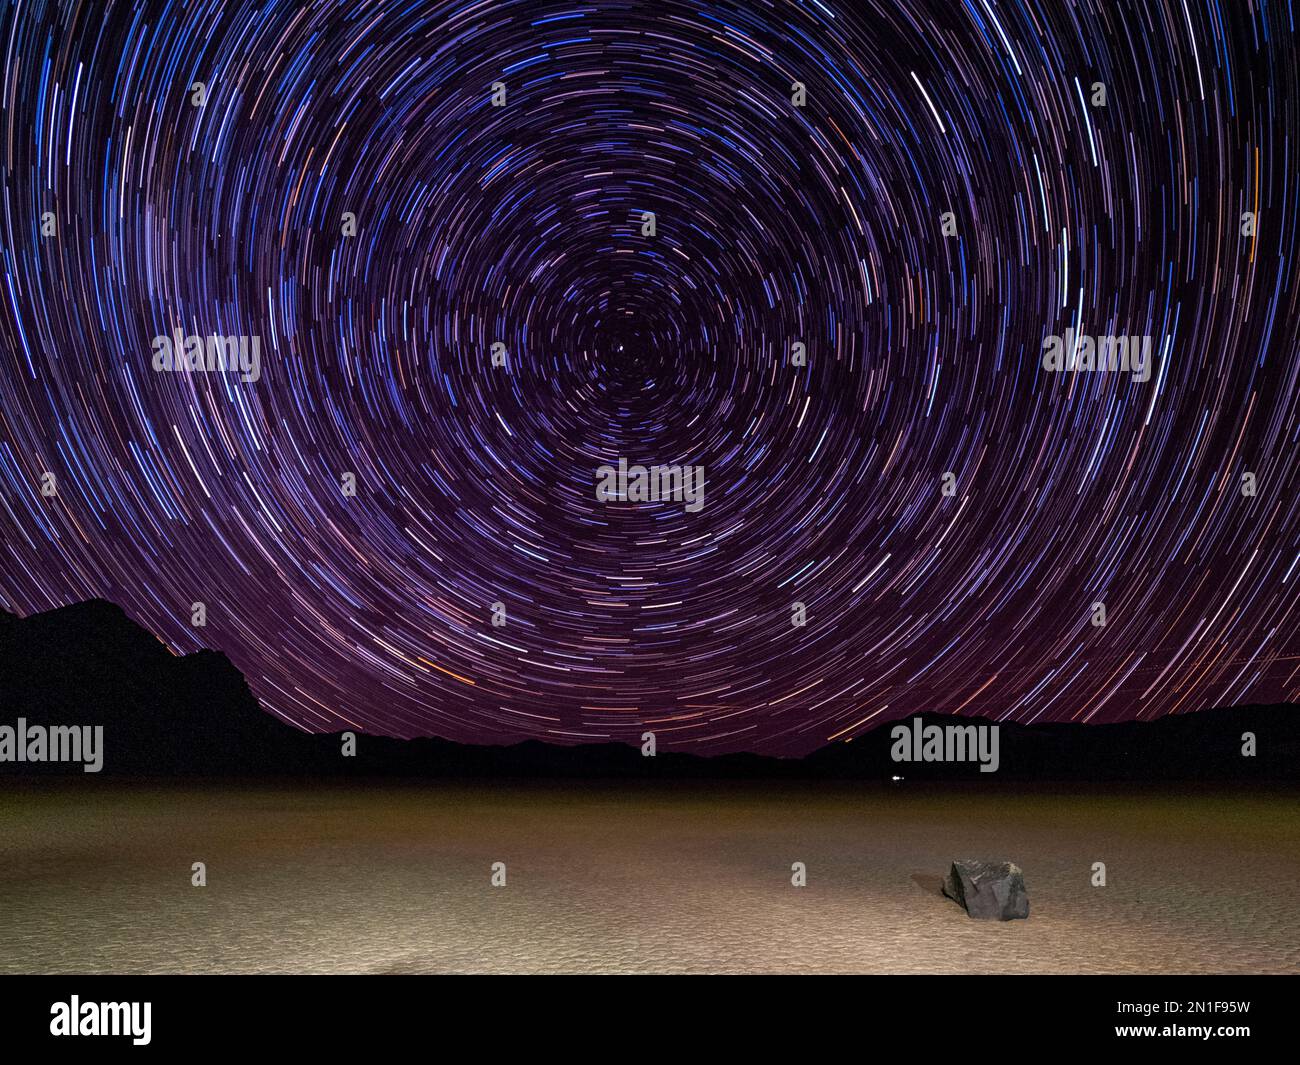 Photo nocturne des étoiles, de l'hippodrome, d'une playa ou d'un lavoir séché, dans le parc national de la Vallée de la mort, Californie, États-Unis d'Amérique, Amérique du Nord Banque D'Images